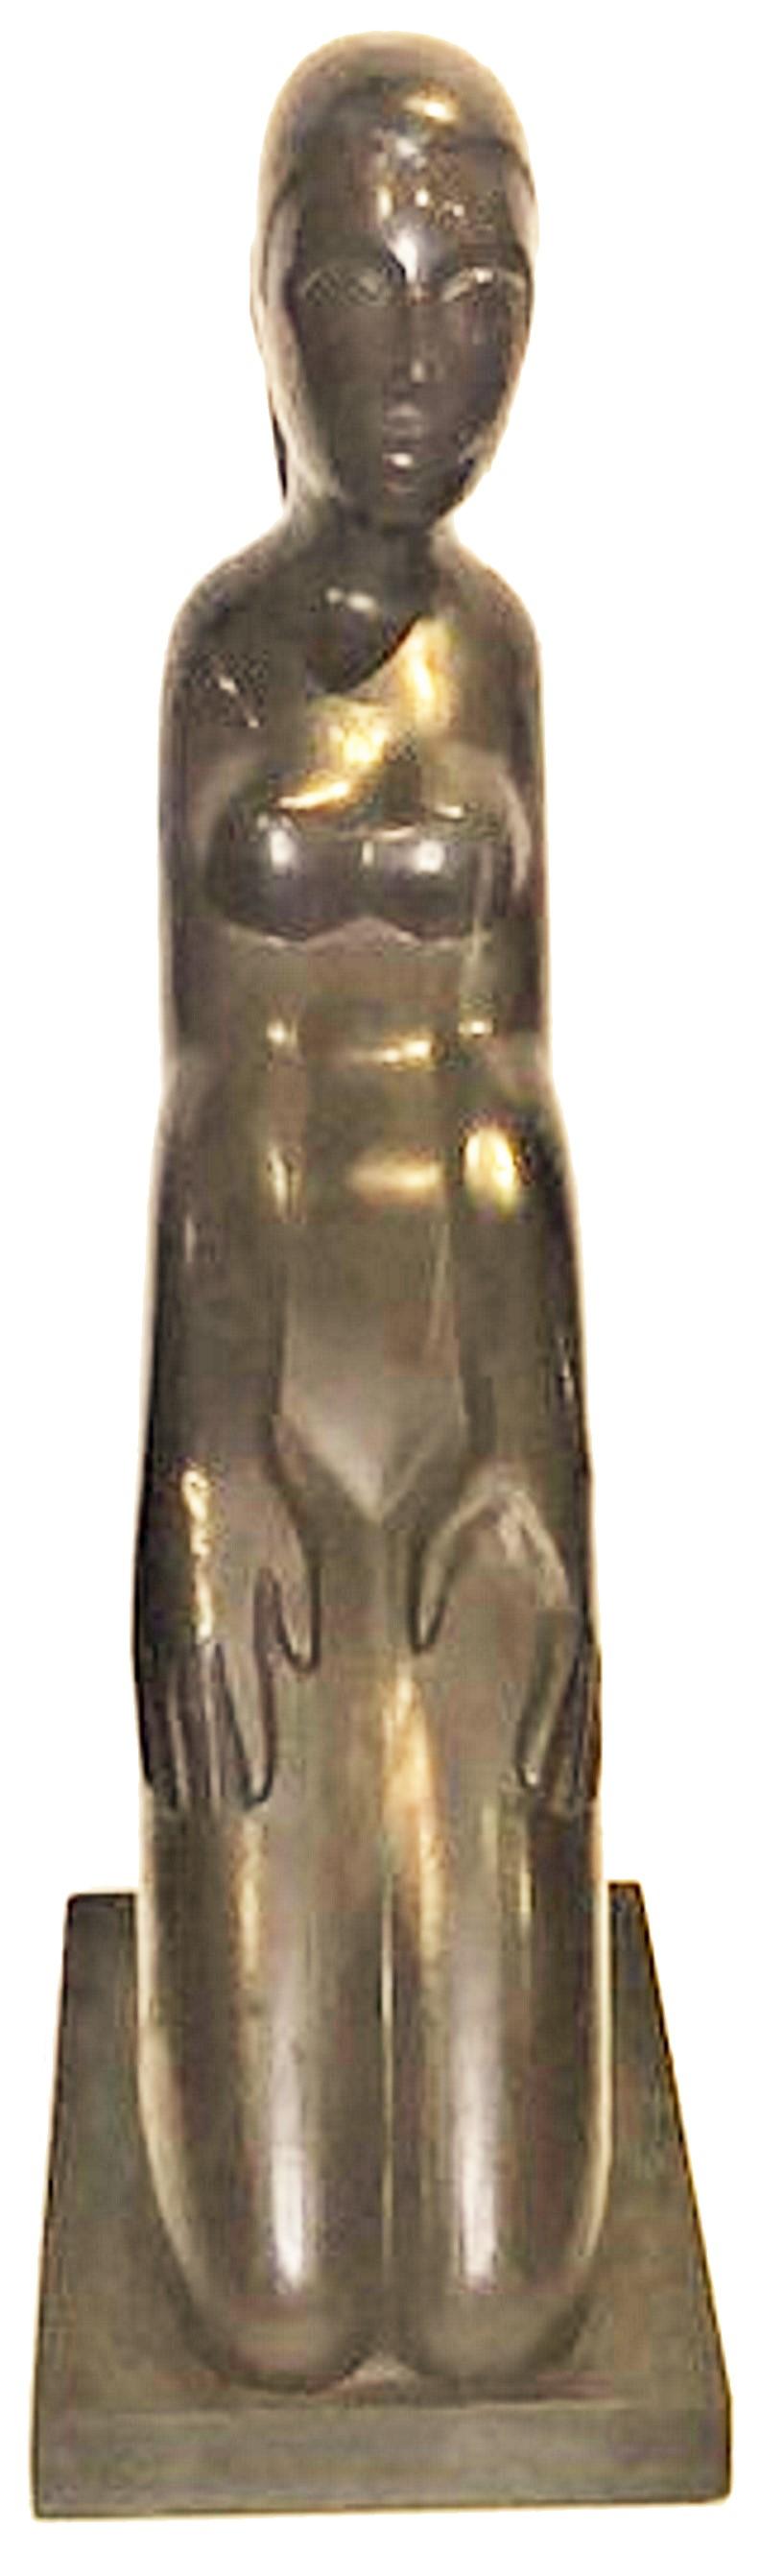 Art déco américain 
Femme nue agenouillée 
Sculpture en ardoise sculptée
ca. 1920

DÉTAILS		
Monté sur une base en marbre d'origine. 
Apparemment non signé.

DIMENSIONS	
Hauteur : 19 pouces        
Largeur : 12 pouces         
Profondeur : 4 pouces 